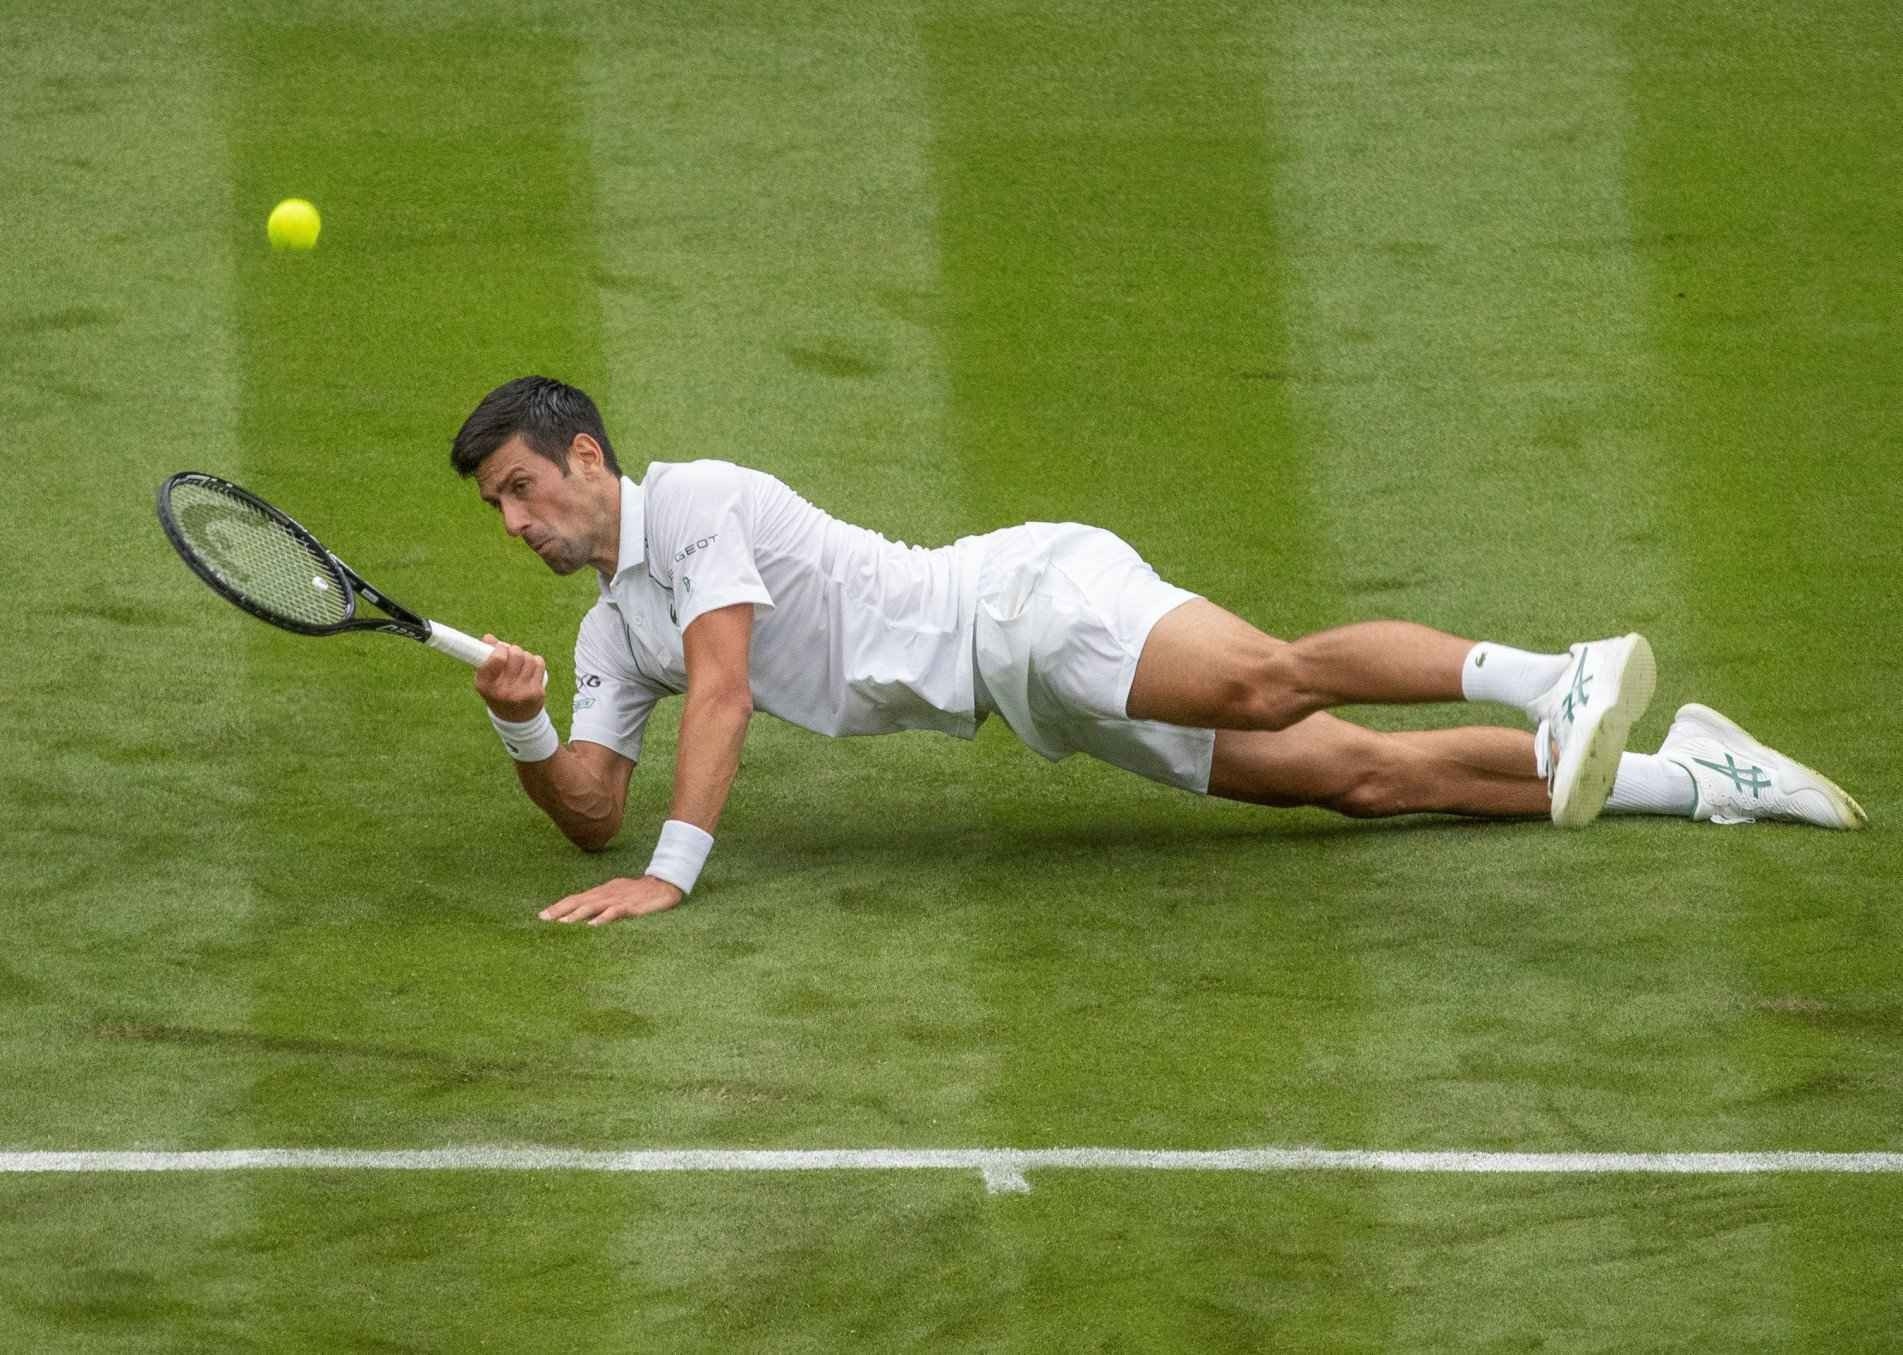 Djokovic e adversário, o britânico Draper, escorregaram bastante no piso escorregadio